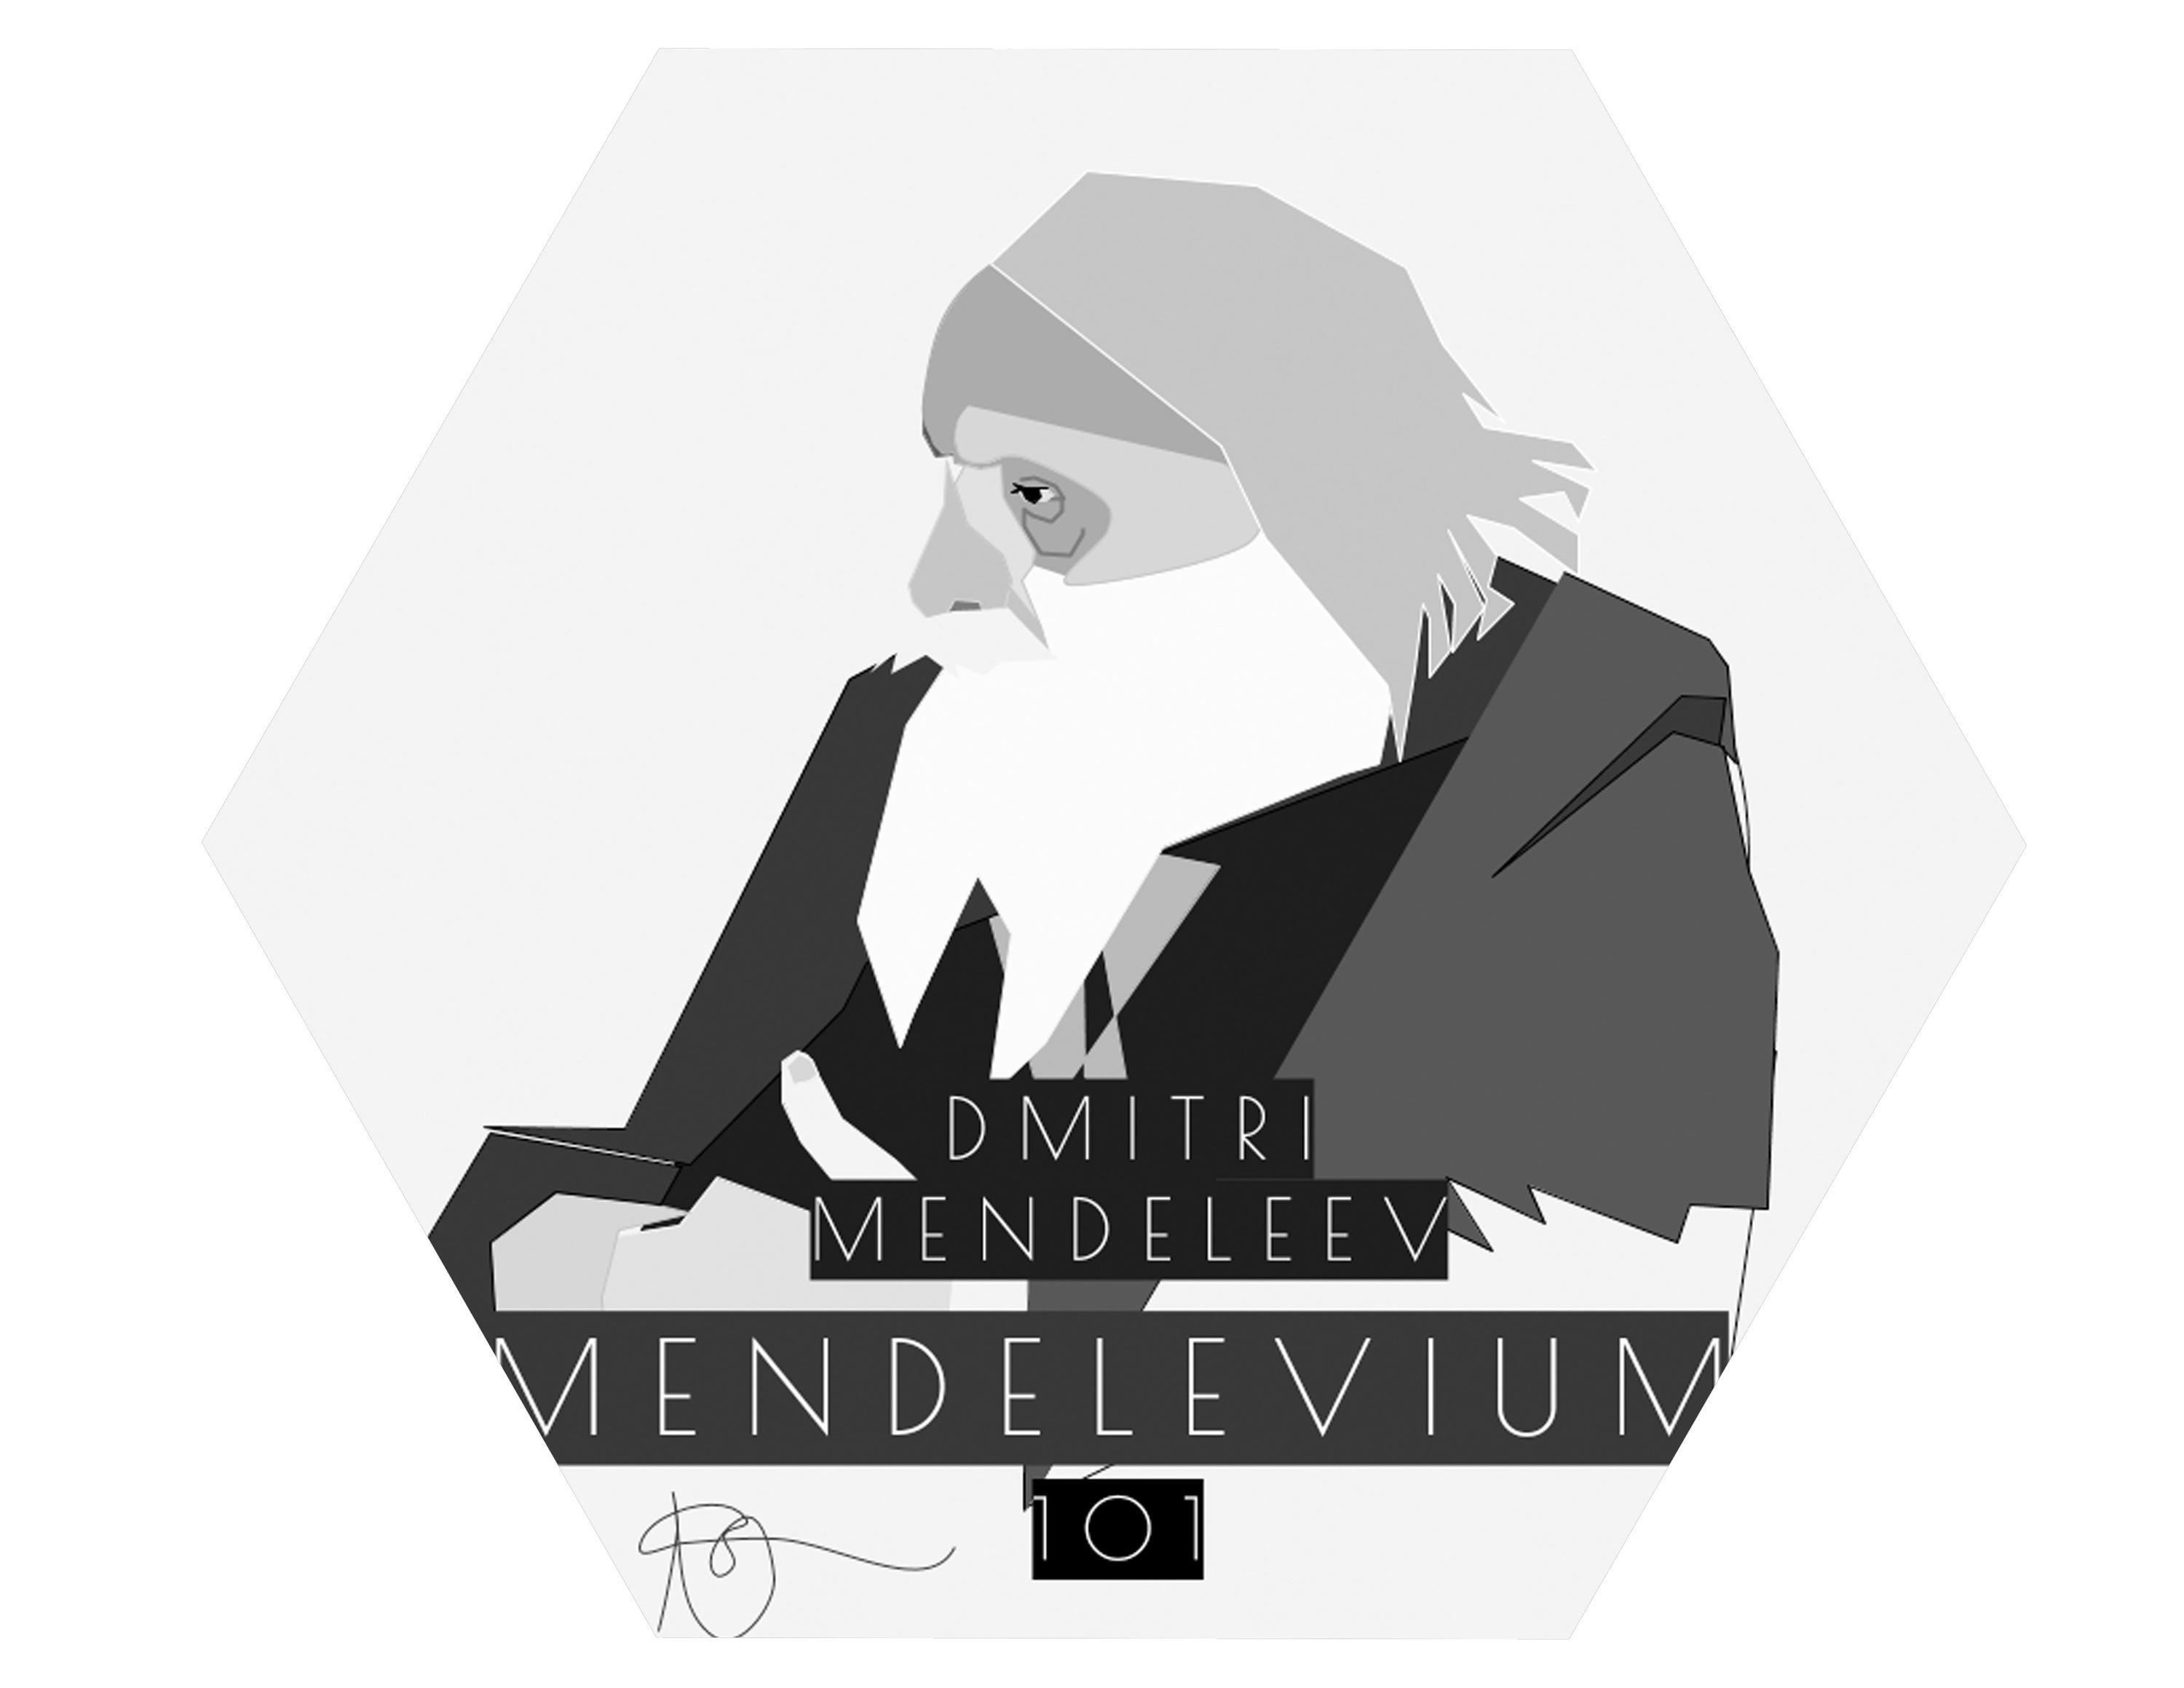 Black and white portrait of Mendeleev